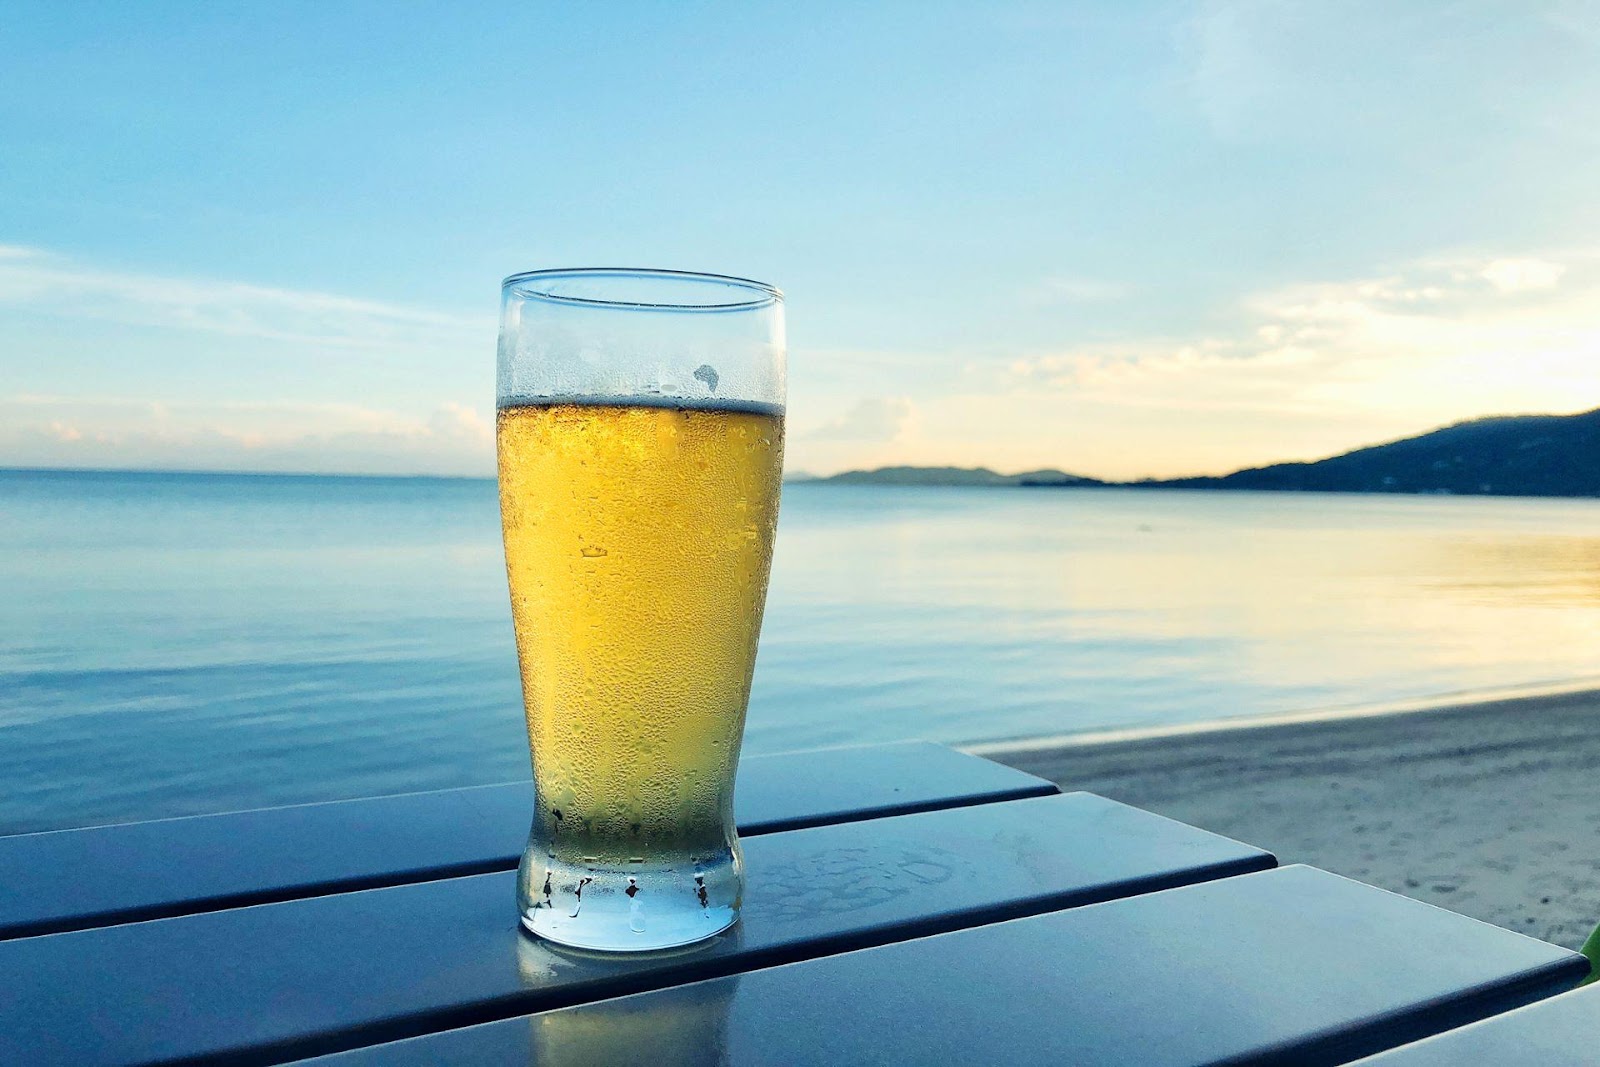 มาทำความรู้จักกับ ลาเกอร์ เบียร์สีทองสดใสที่แพร่หลายในประเทศไทย 2